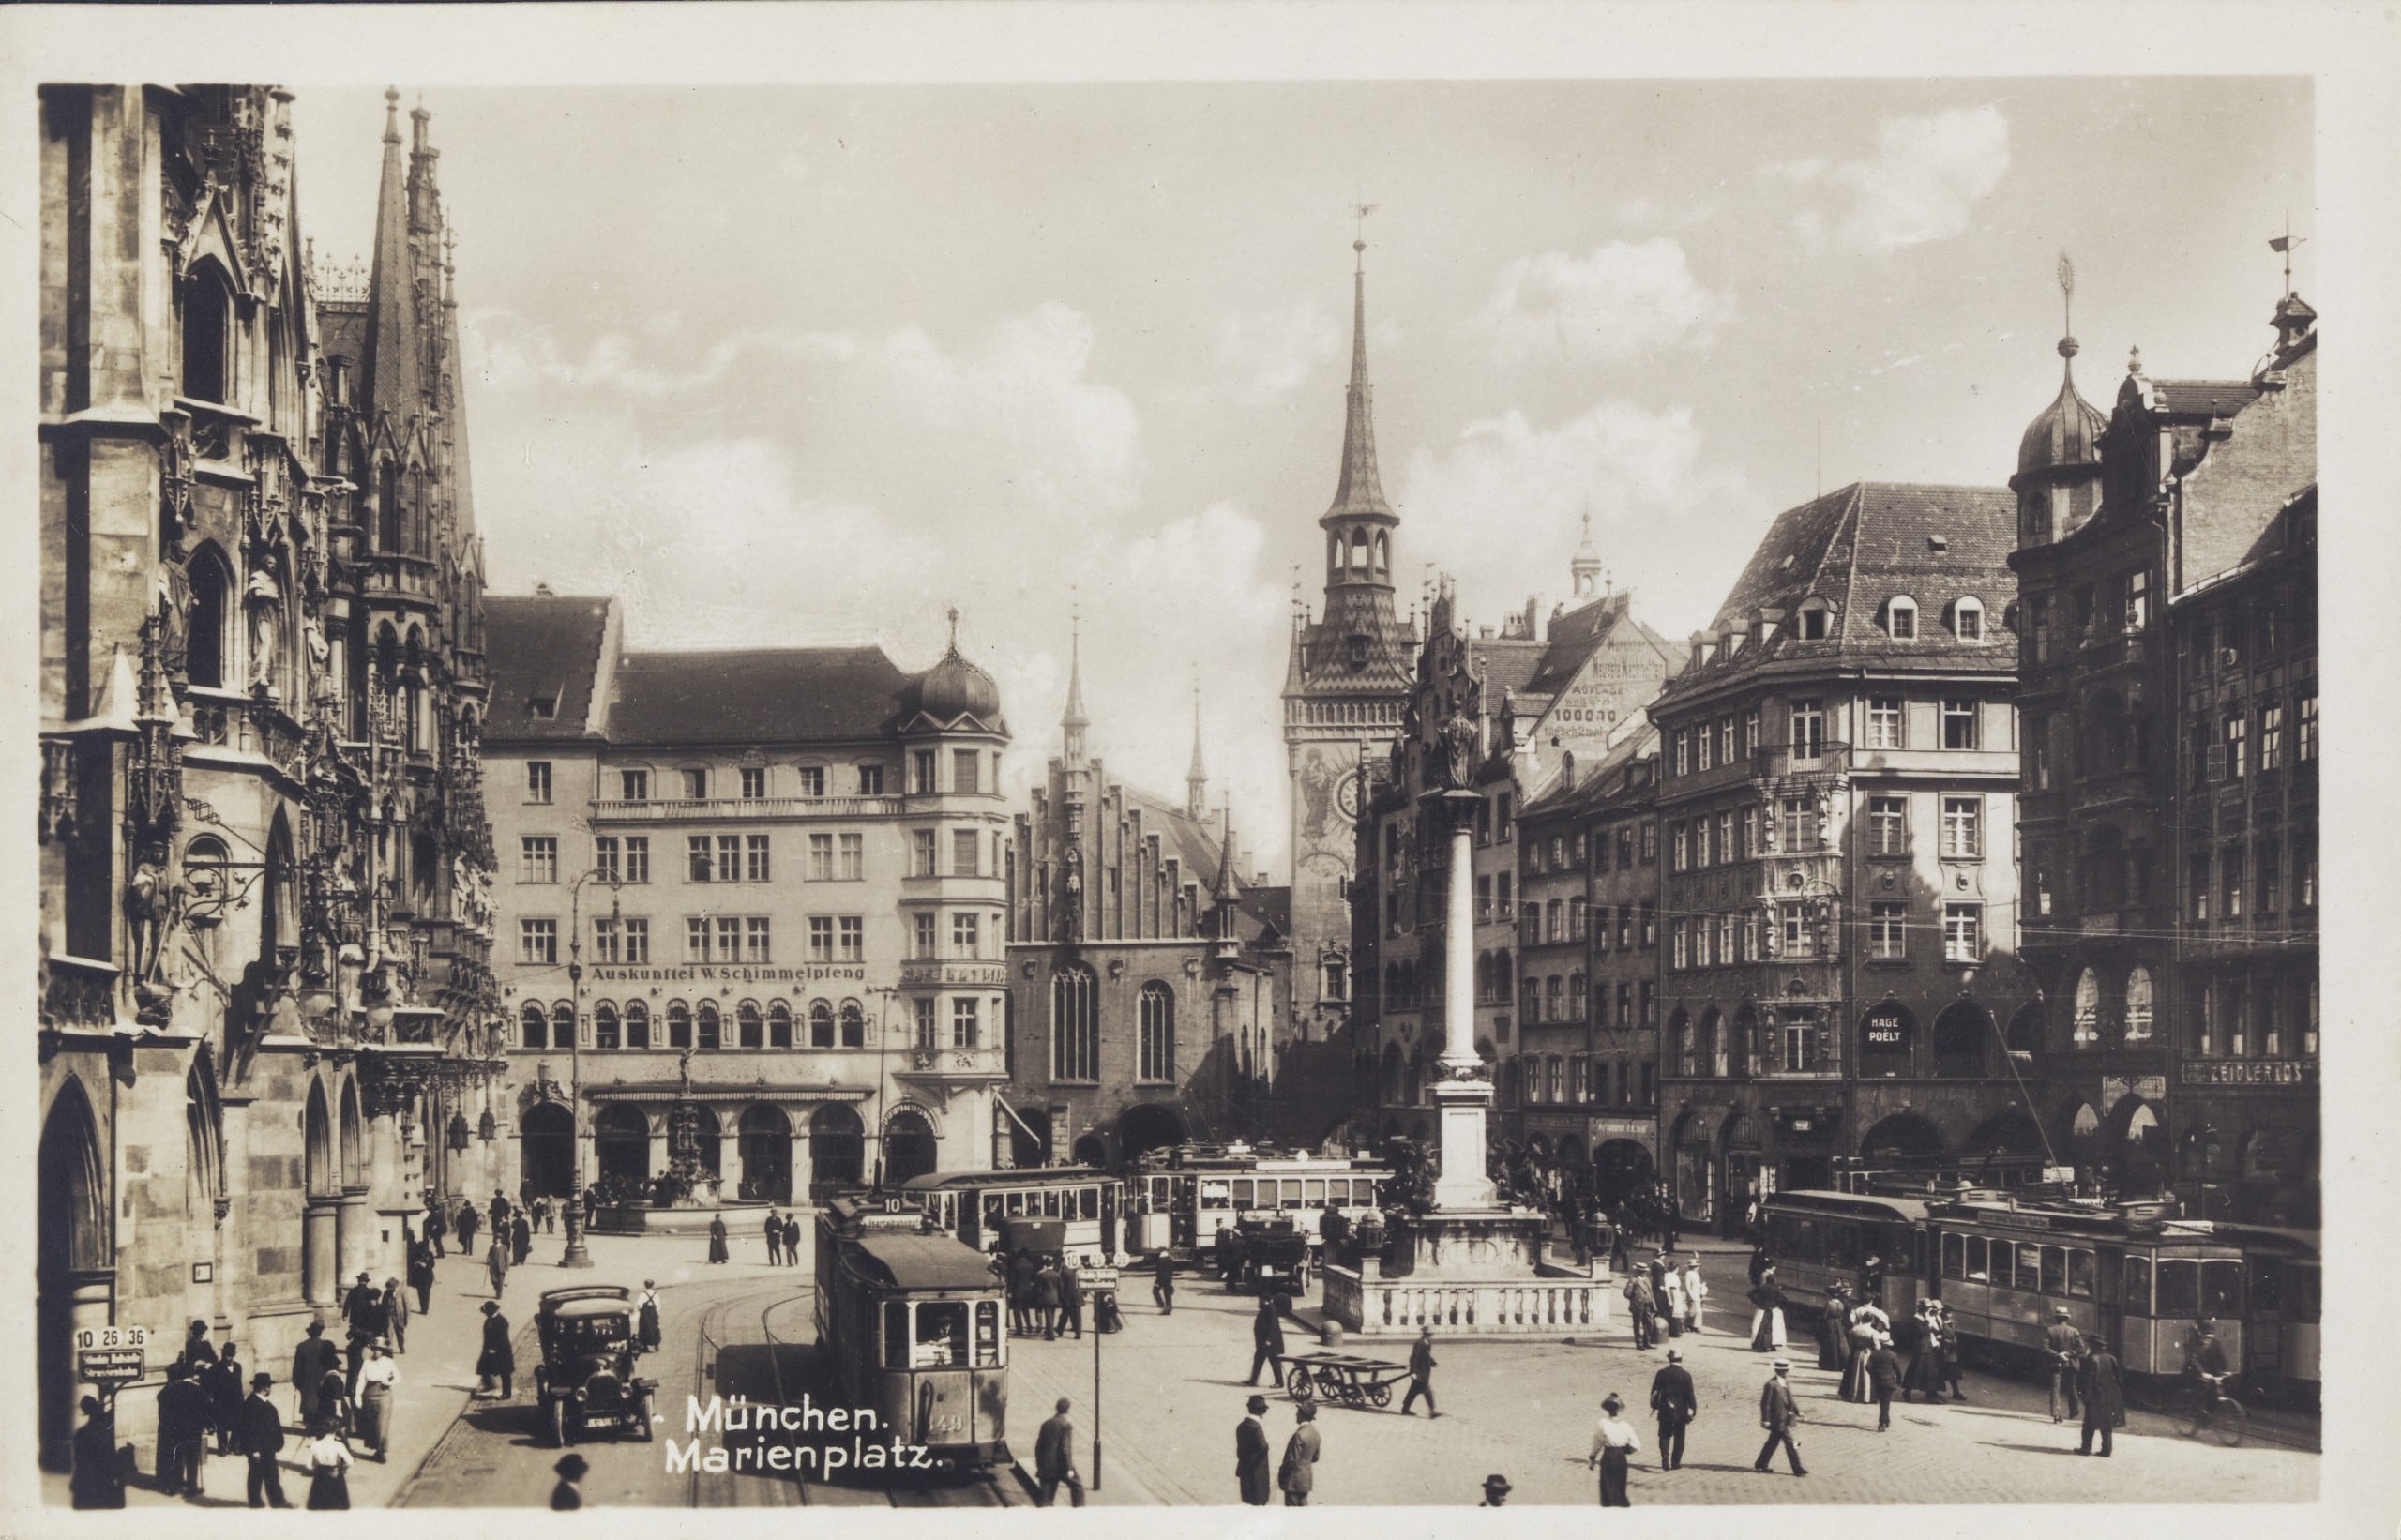 Der Münchner Marienplatz allein beherbergt diverse Denkmäler, eines davon das Neue Rathaus (links) oder die Mariensäule (Mitte rechts).